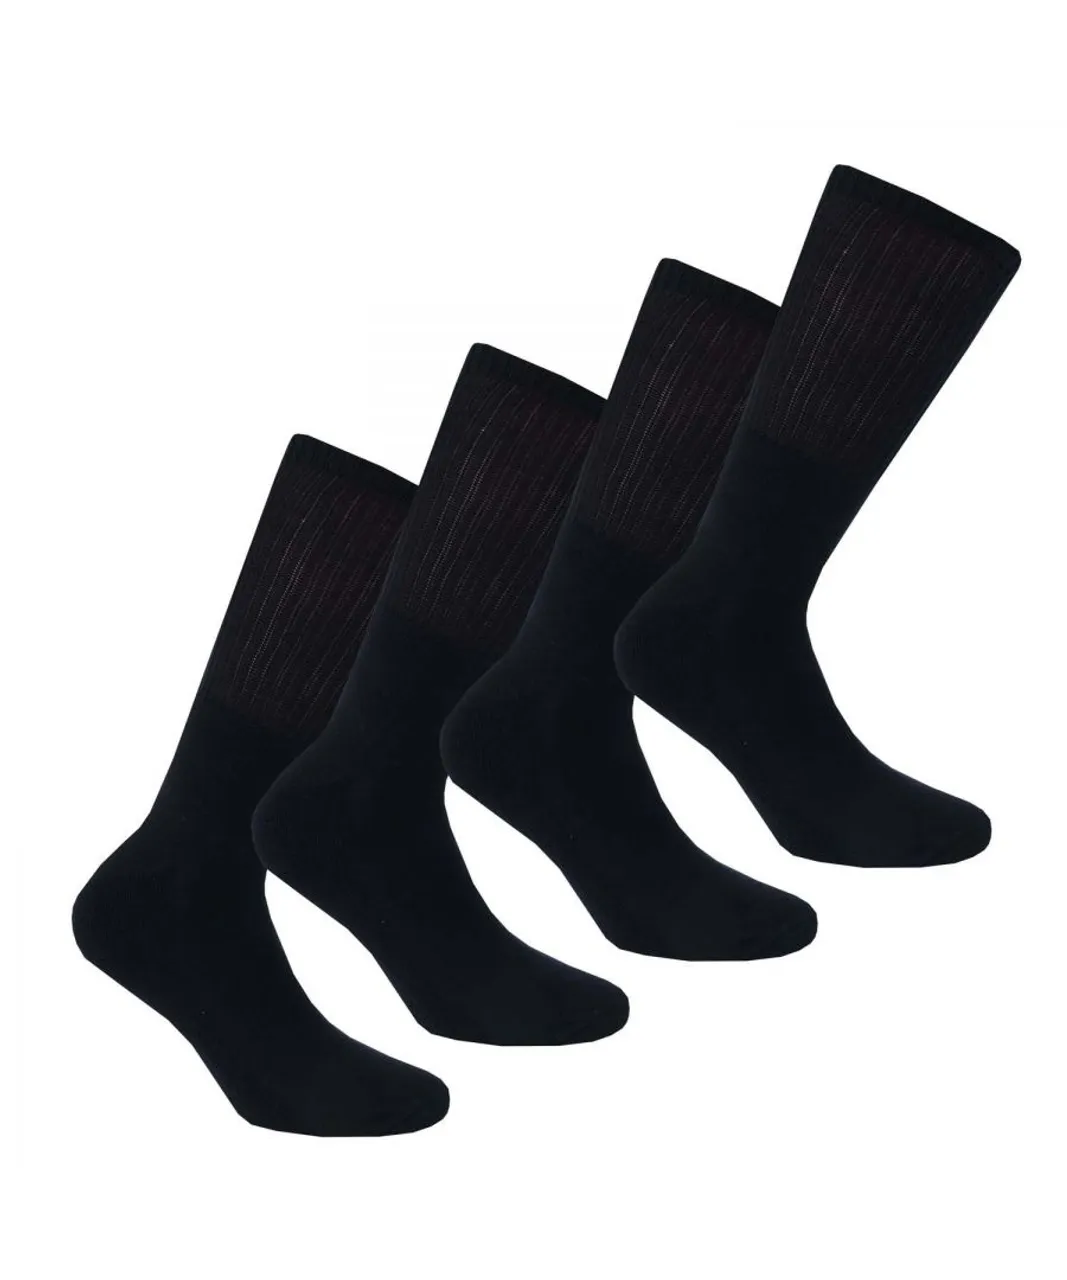 DKNY Mens Radde 3 Pack Sport Socks in Black Cotton